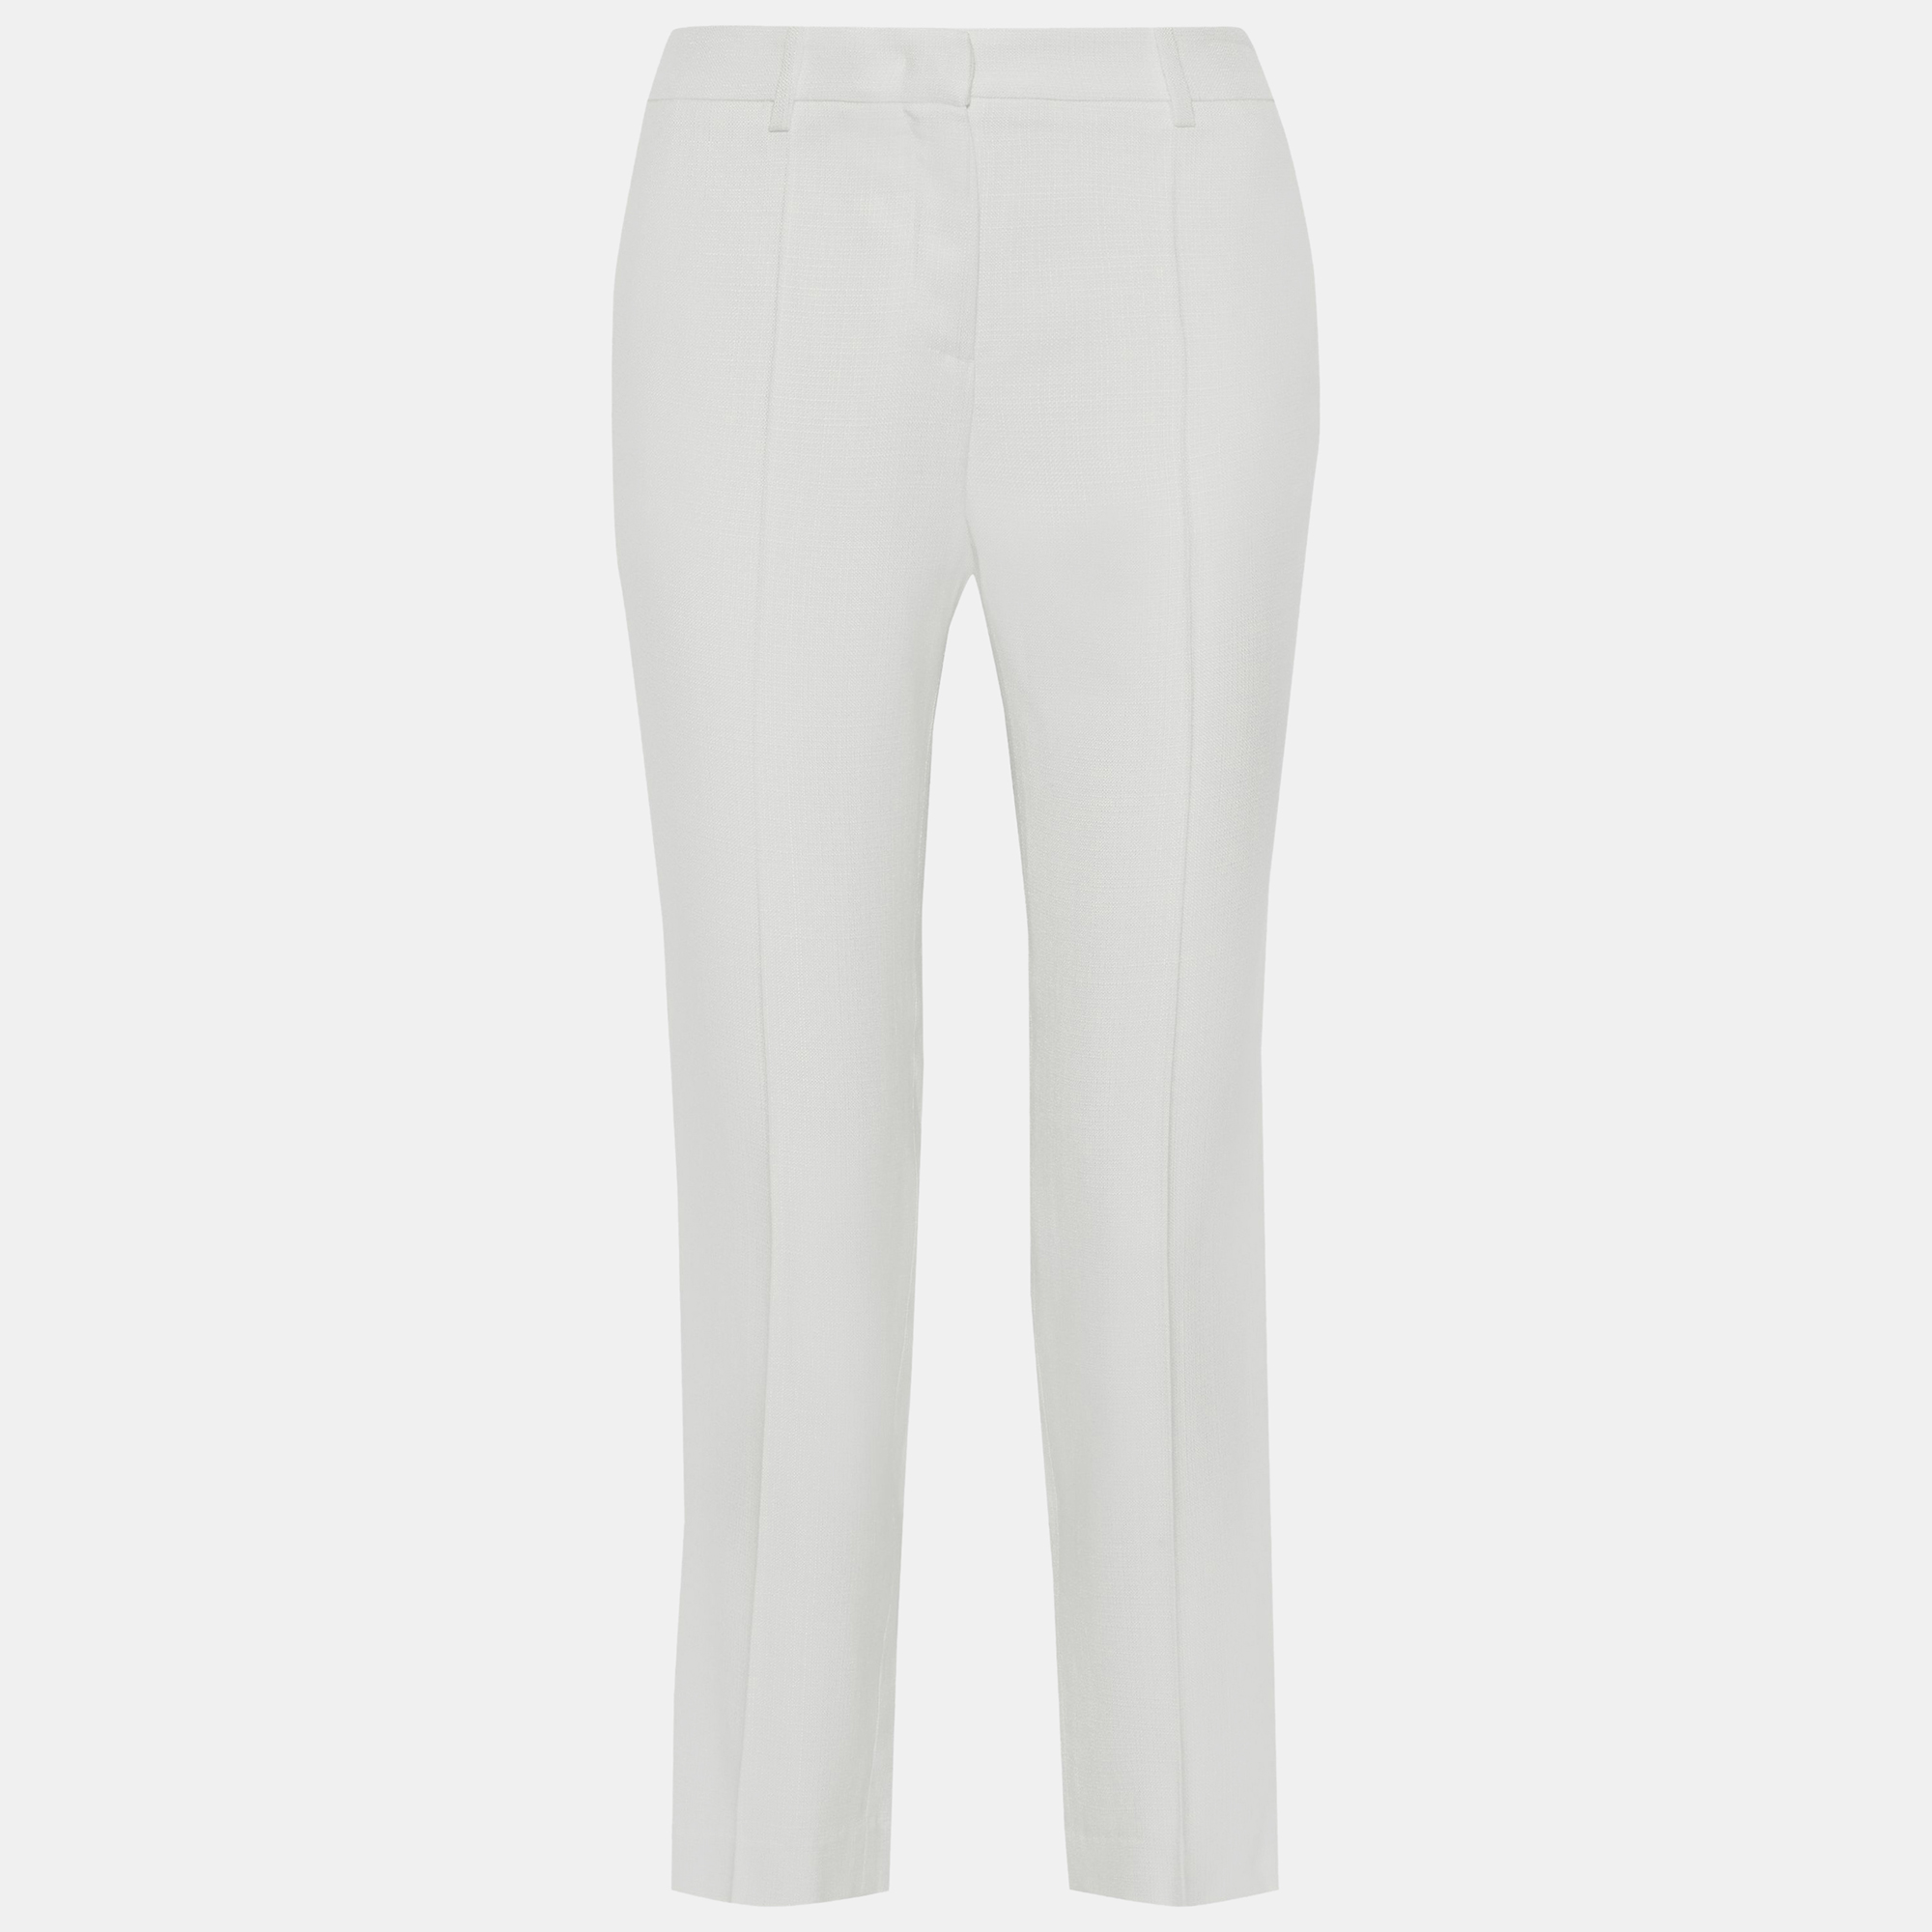 Roberto cavalli white viscose trousers size 46